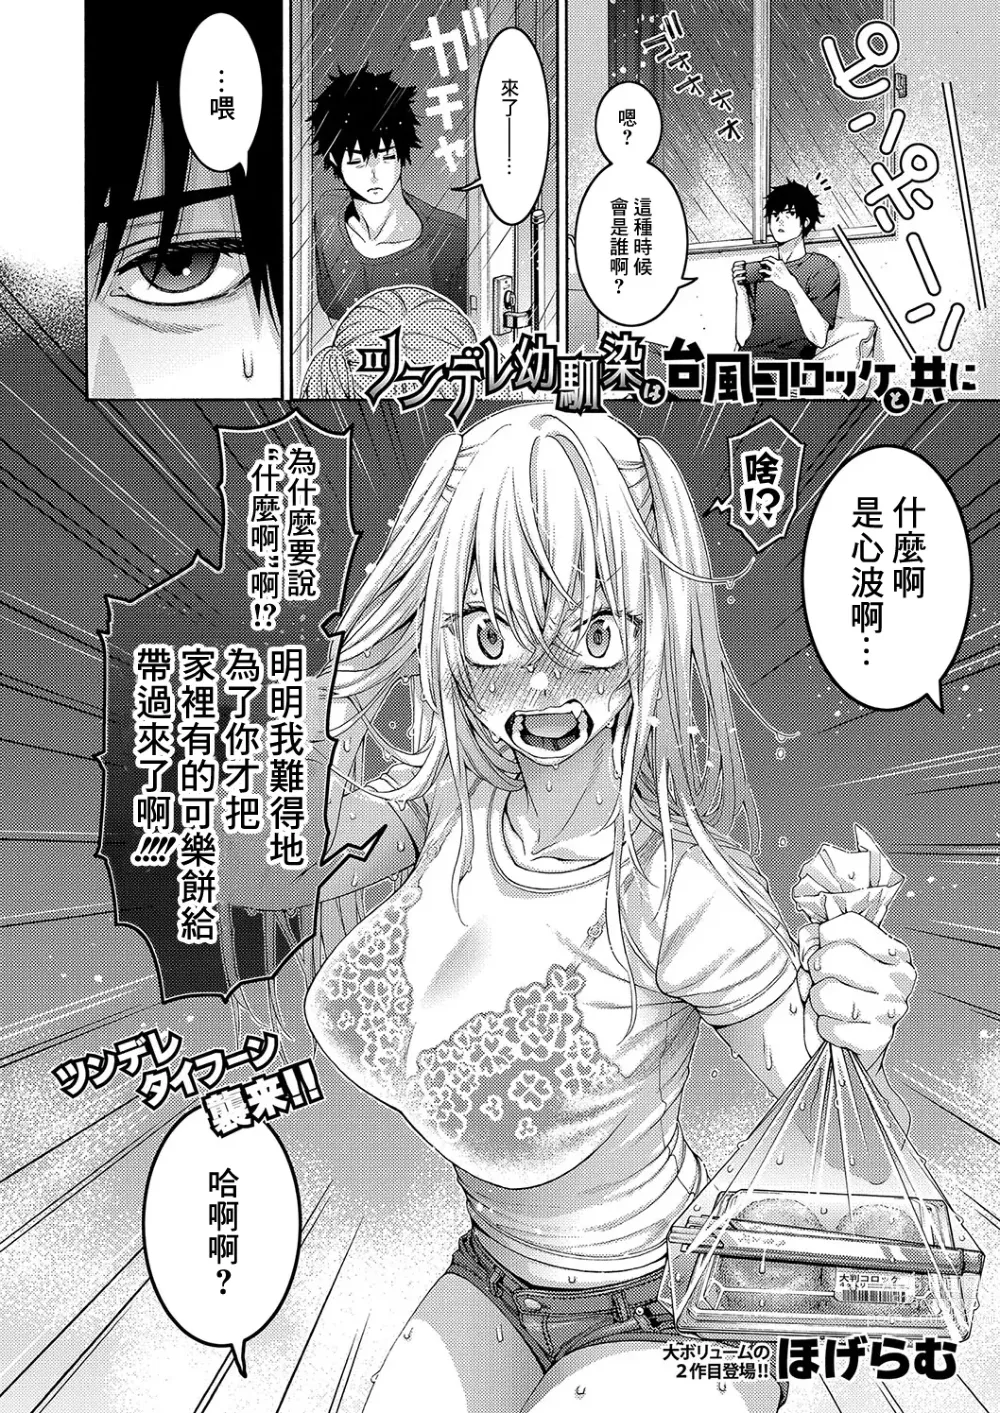 Page 2 of manga Tsundere Osananajimi wa Typhoon Croquette to Tomoni